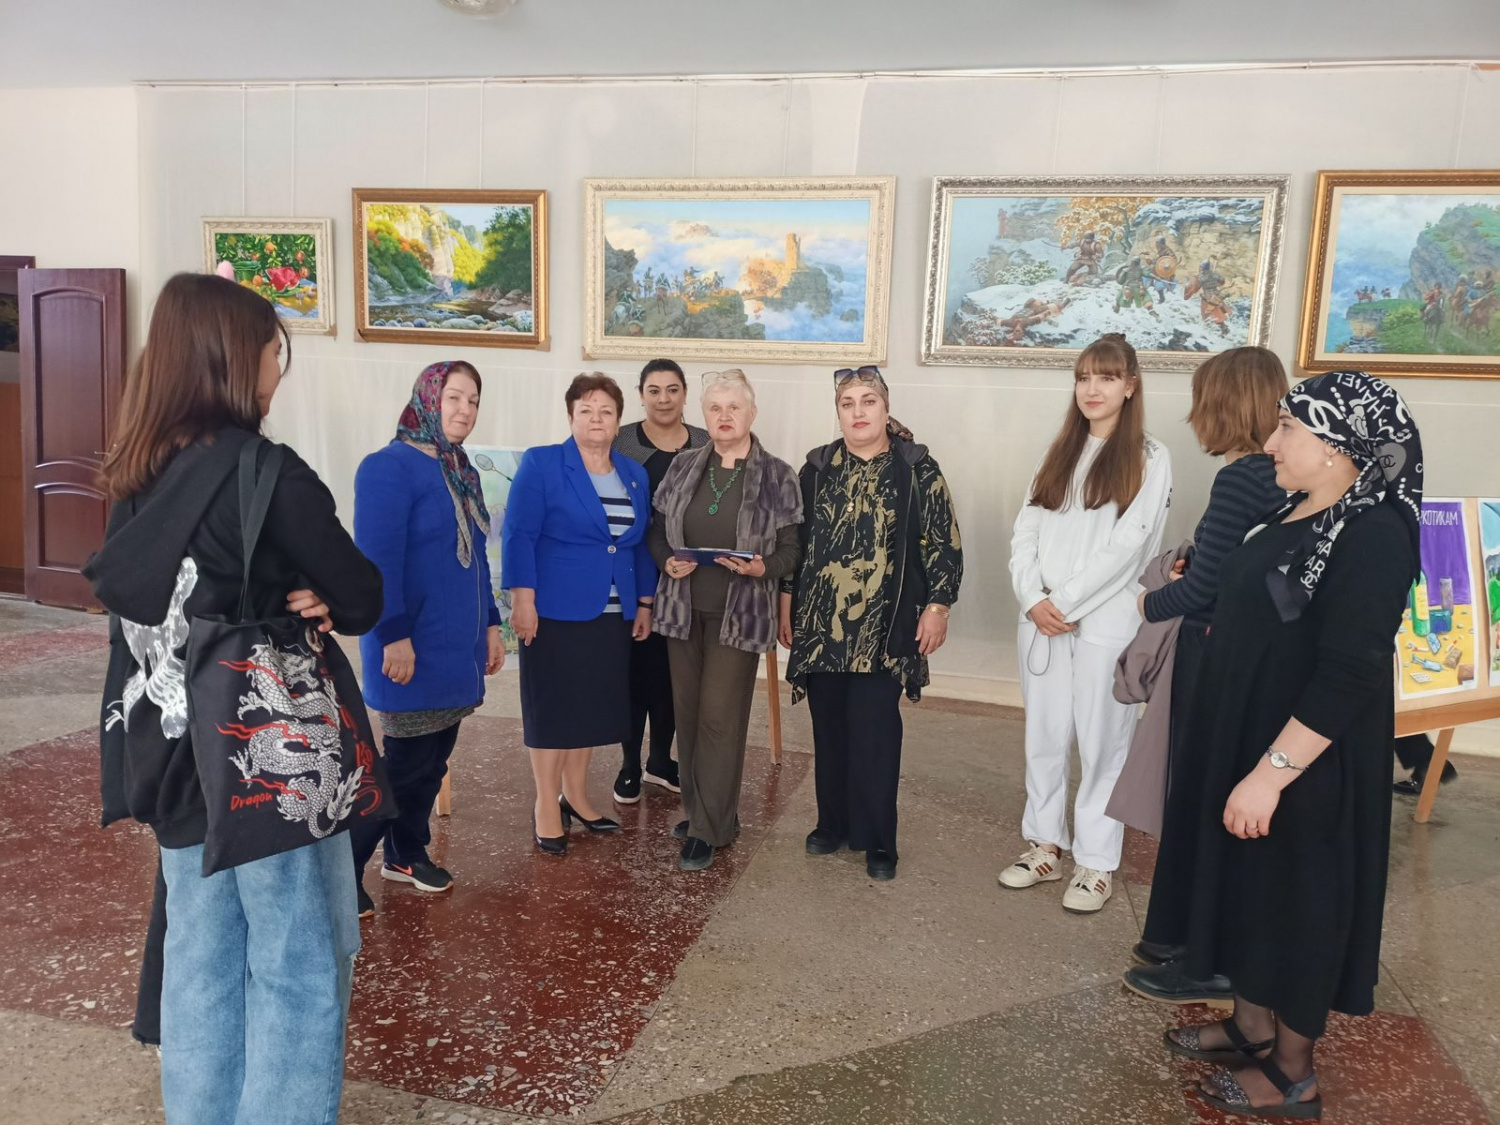 1 мая в фойе Городского дворца культуры им.К.М.Алескерова состоялось открытие Республиканской передвижной выставки  плаката «Мой выбор!». 